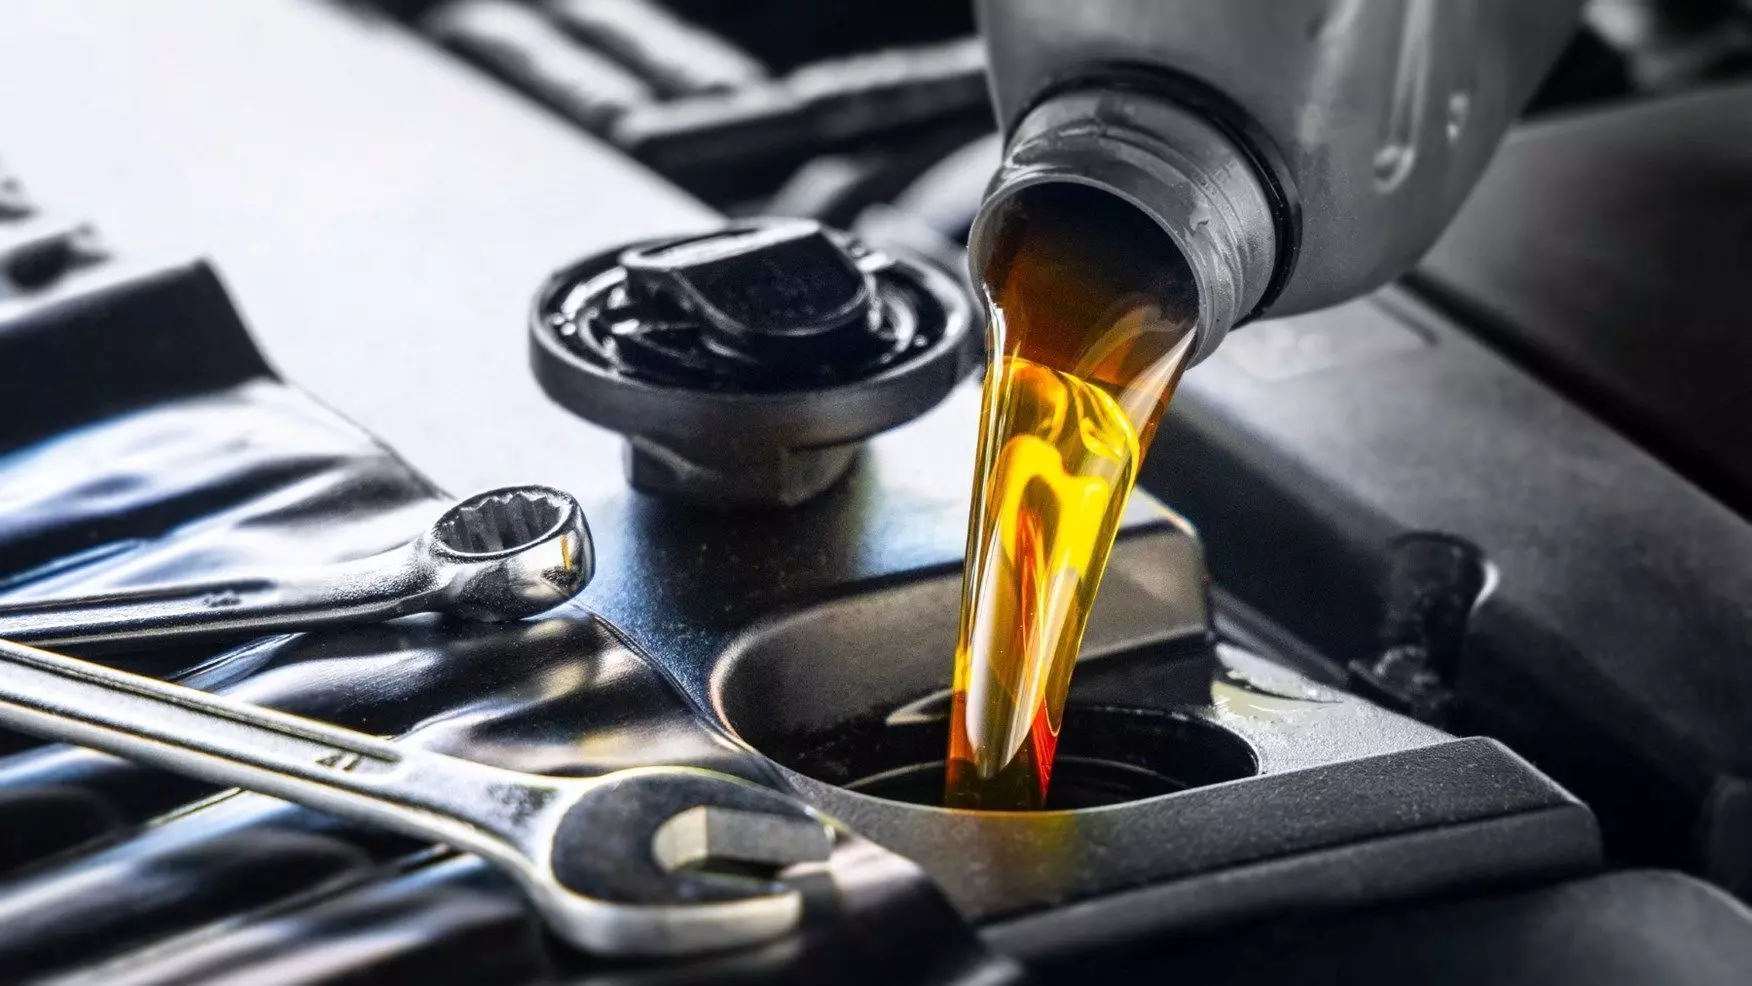 सर्विसिंग करवाते समय कैसे करे सही इंजन ऑयल का चुनाव? किस तरह के Oil पहुंचाते हैं गाड़ी को नुकसान